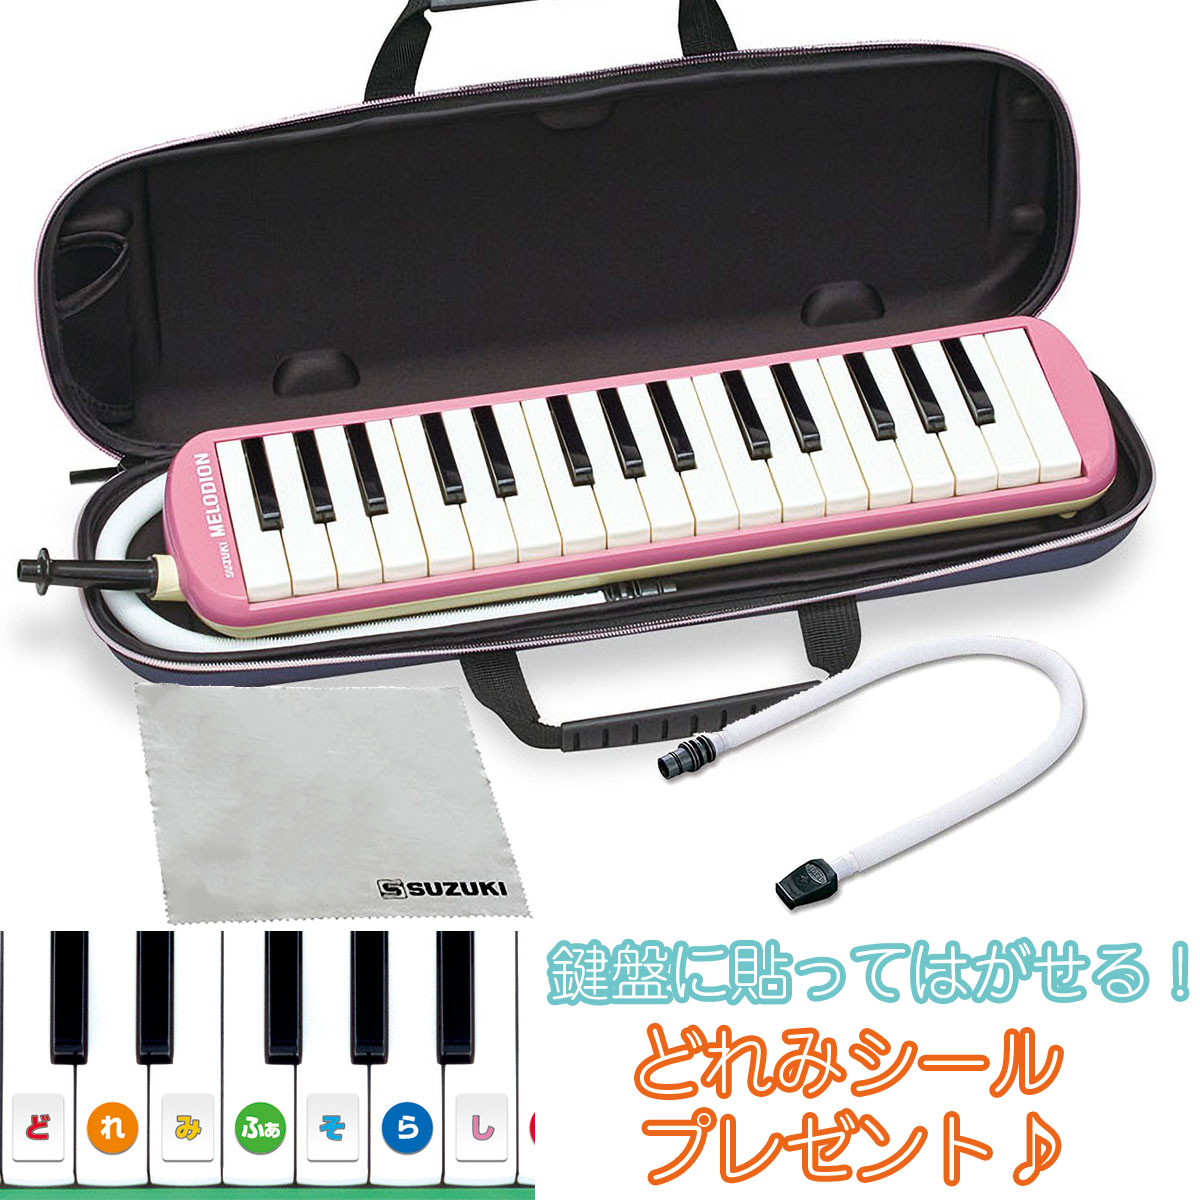 SUZUKI FA-32P ピンク メロディオン 鍵盤ハーモニカ 【セミハードケース付き】 【唄口・ホース付】 【スズキ FA32P】【どれみシールプレゼント】